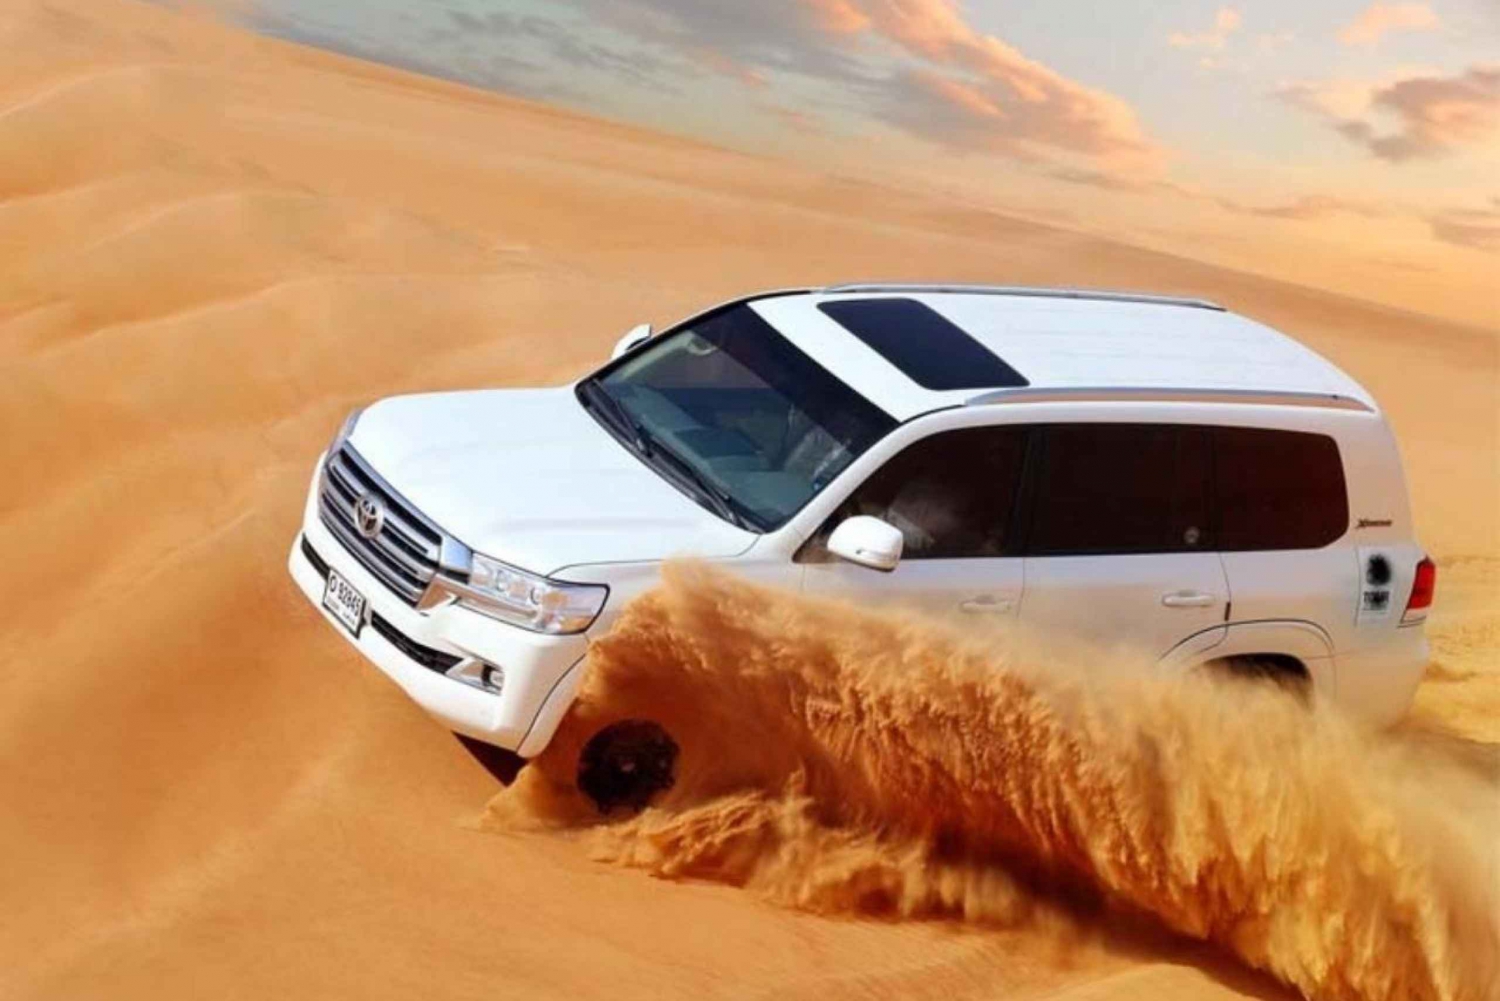 Dubai: Safaris i sanddyner i öknen, kamel, sandboard, grillning och shower